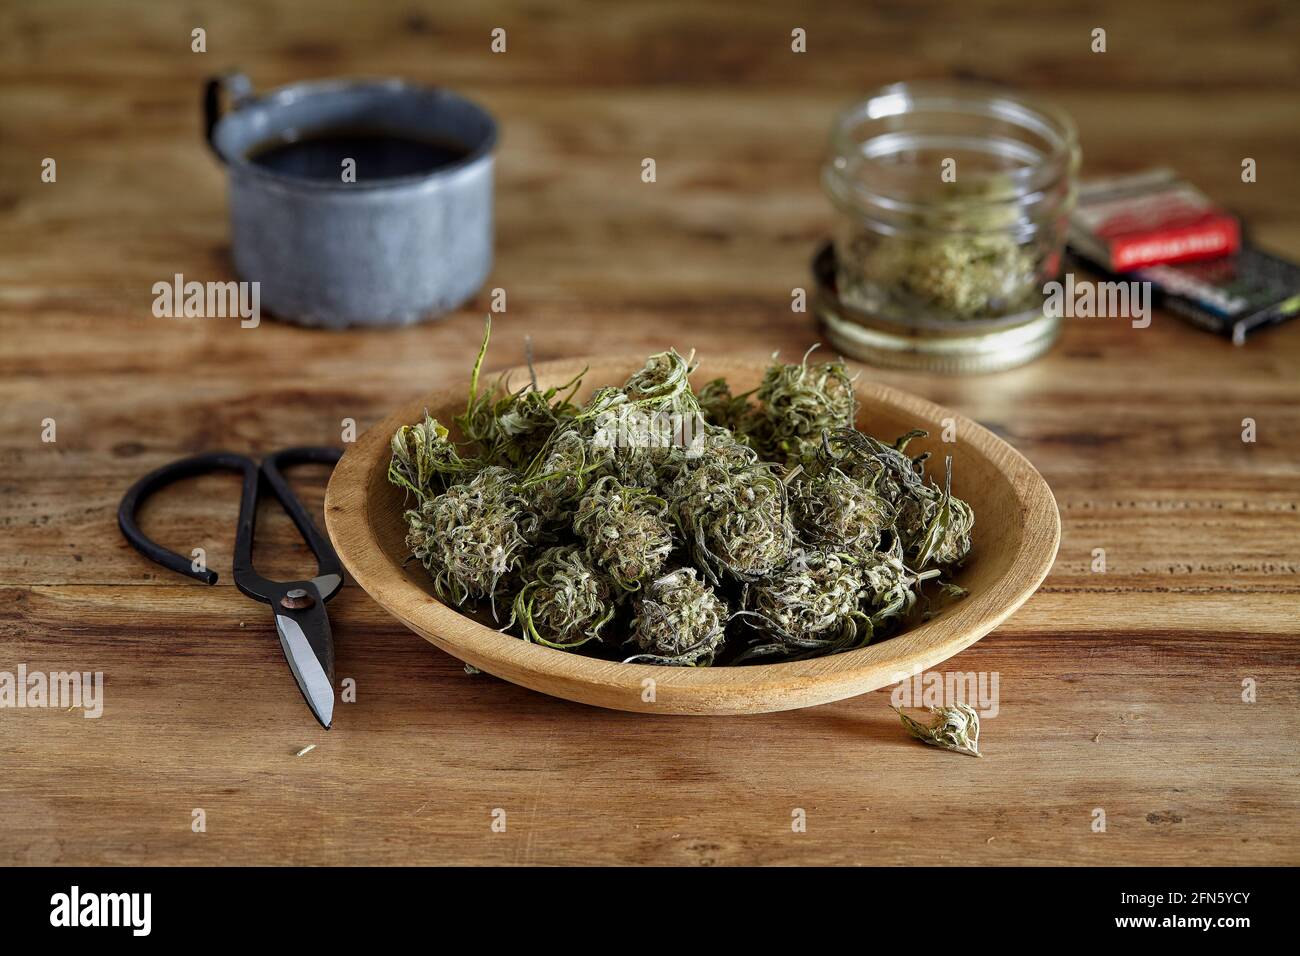 una vida de cannabis sin recortar con aspecto vintage en un recipiente con tijeras Foto de stock